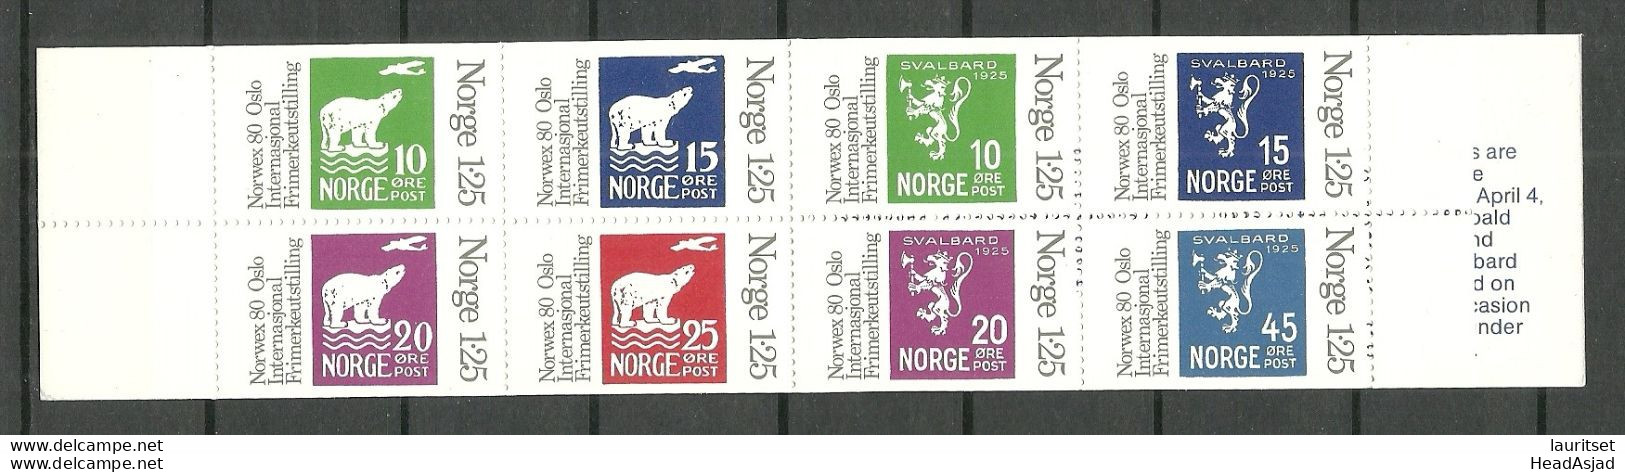 NORWAY 1978 Block S/S Stamp Booklet Michel MH 1 MNH Stamp Exhibition Briefmarken-Ausstellung Norwex `80 - Philatelic Exhibitions